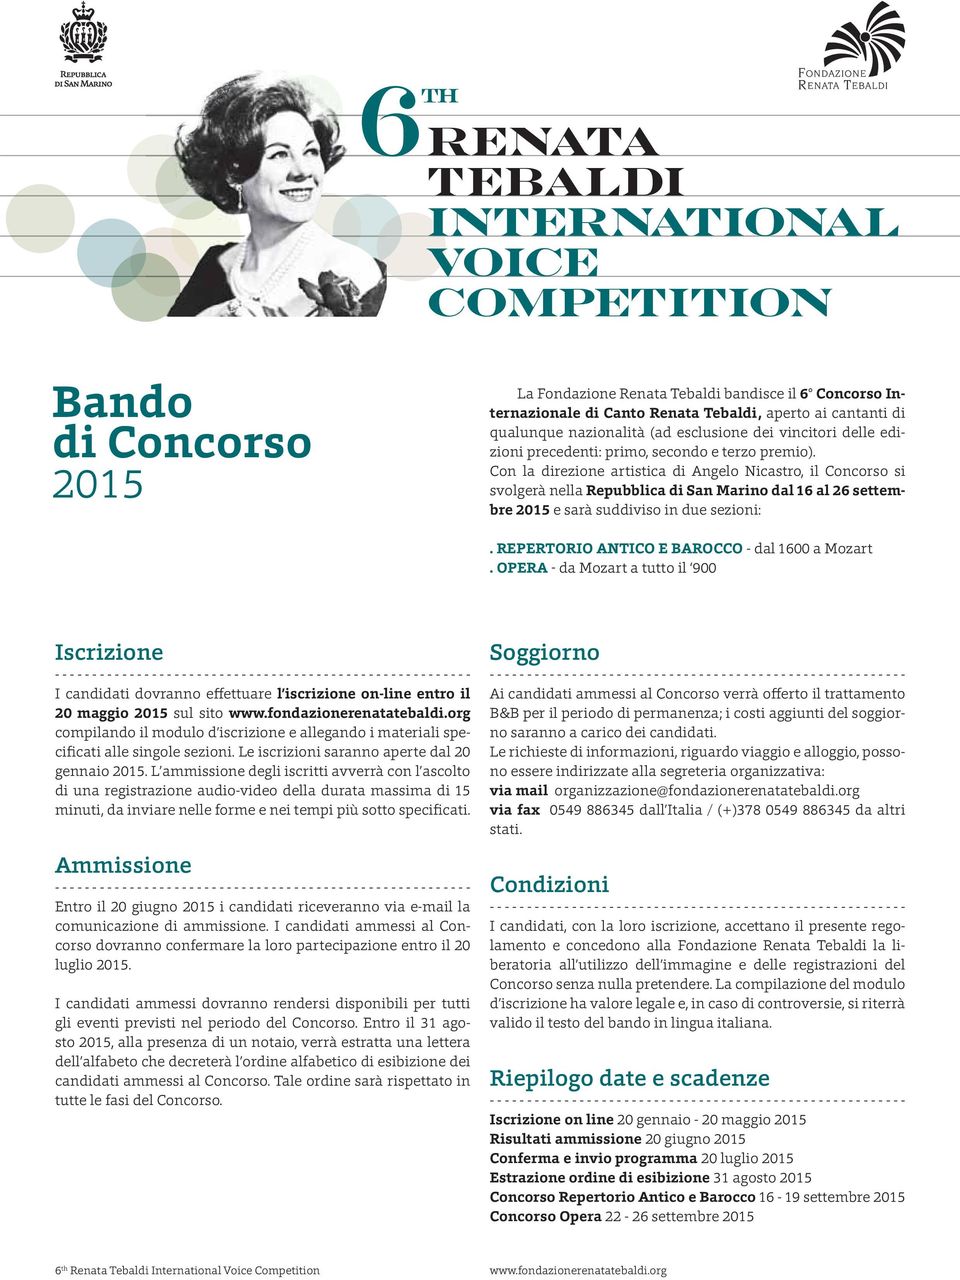 Con la direzione artistica di Angelo Nicastro, il Concorso si svolgerà nella Repubblica di San Marino dal 16 al 26 settembre 2015 e sarà suddiviso in due sezioni:.